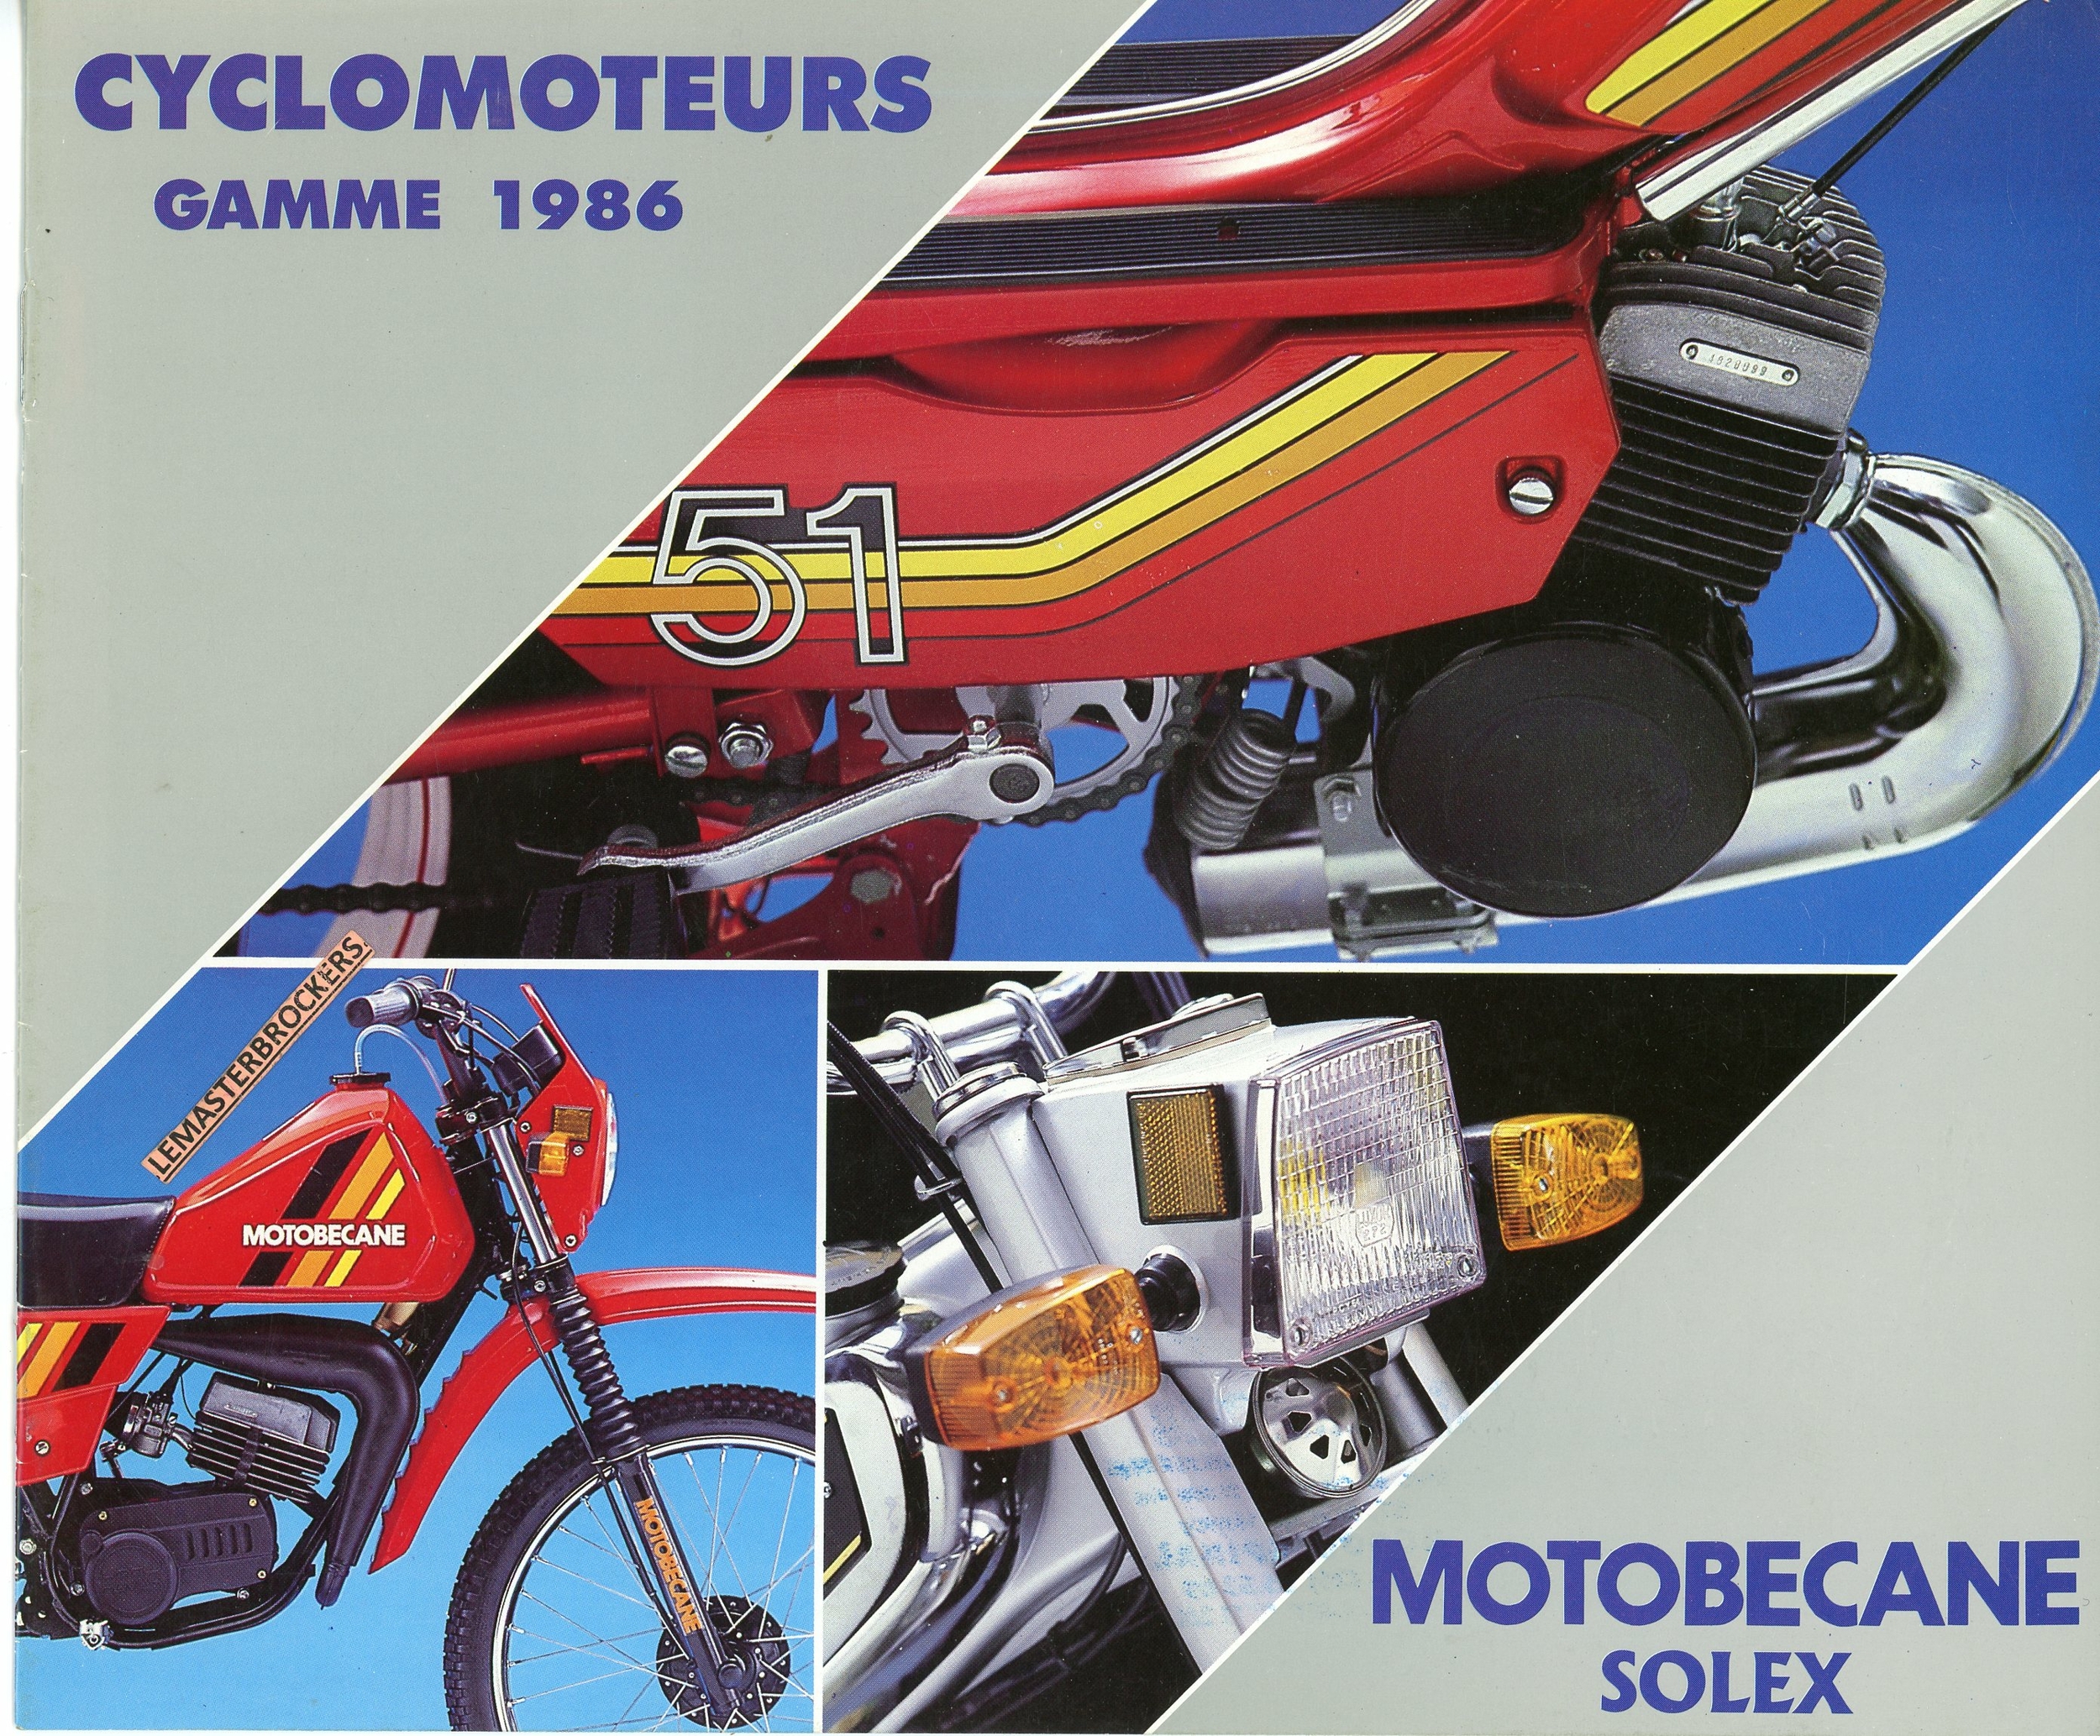 BROCHURE-MOTOBECANE-SOLEX-LEMASTERBROCKERS-CYCLOMOTEUR-41-51-881-88-89-EV-EW-1986